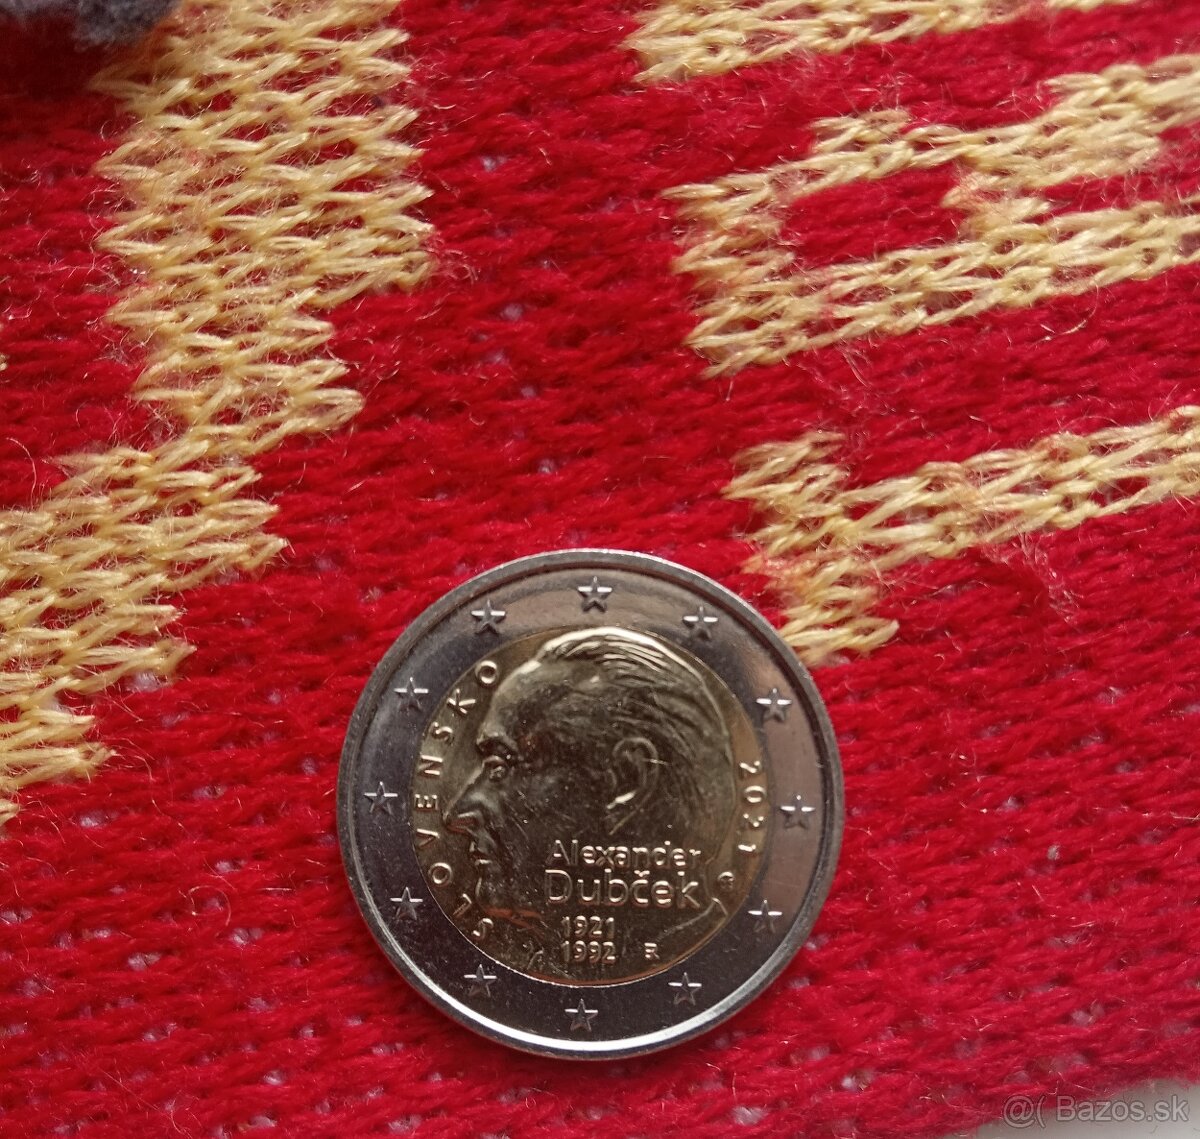 2 eurová minca Alexandra Dubčeka